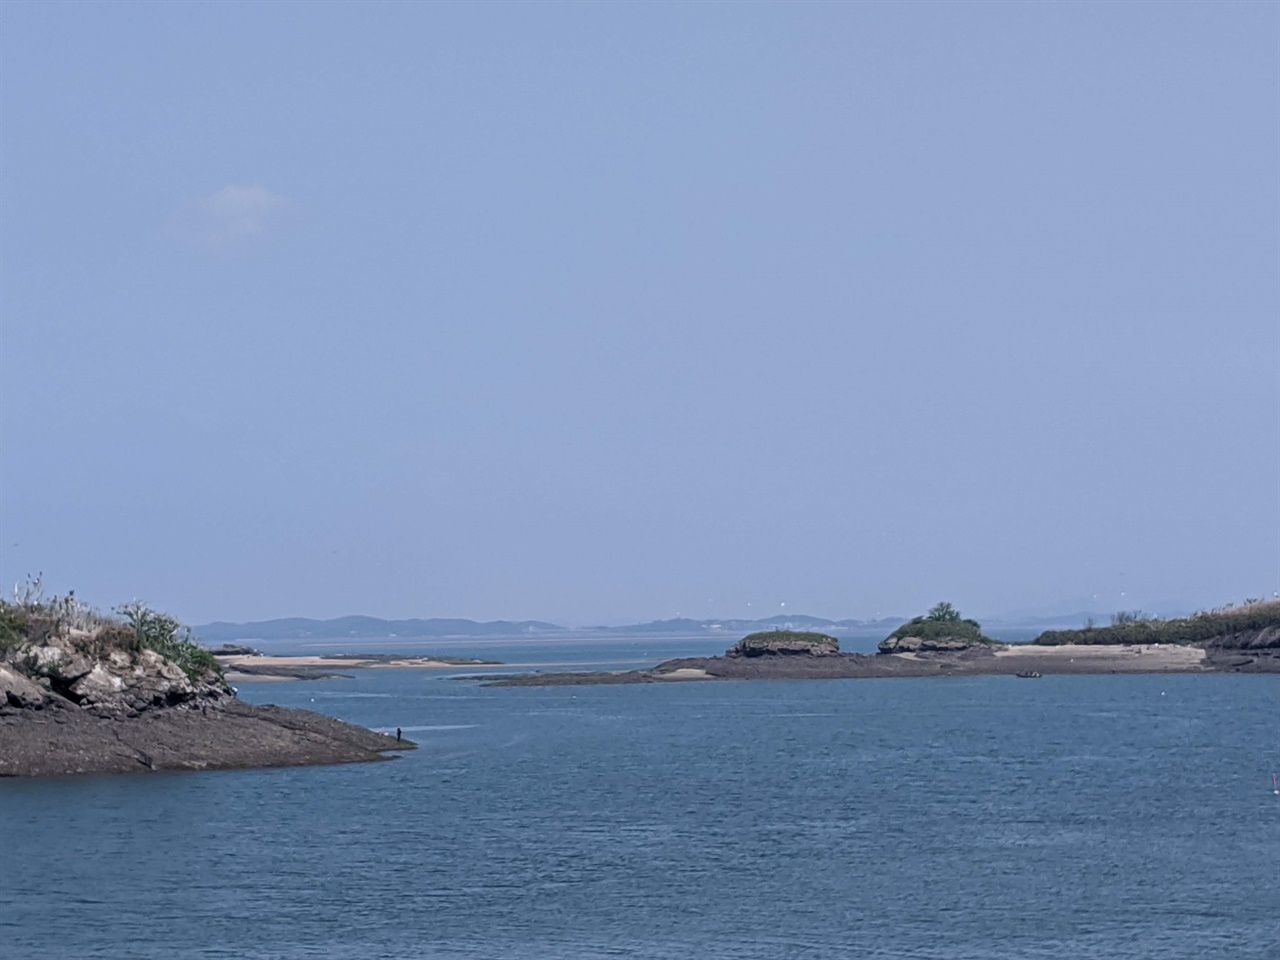 모자 모양의 섬인 전도 아랫쪽의 까만 점이 낚시꾼이고 오른쪽 끝 일부 모습이 나타난 섬이 오가도이다.